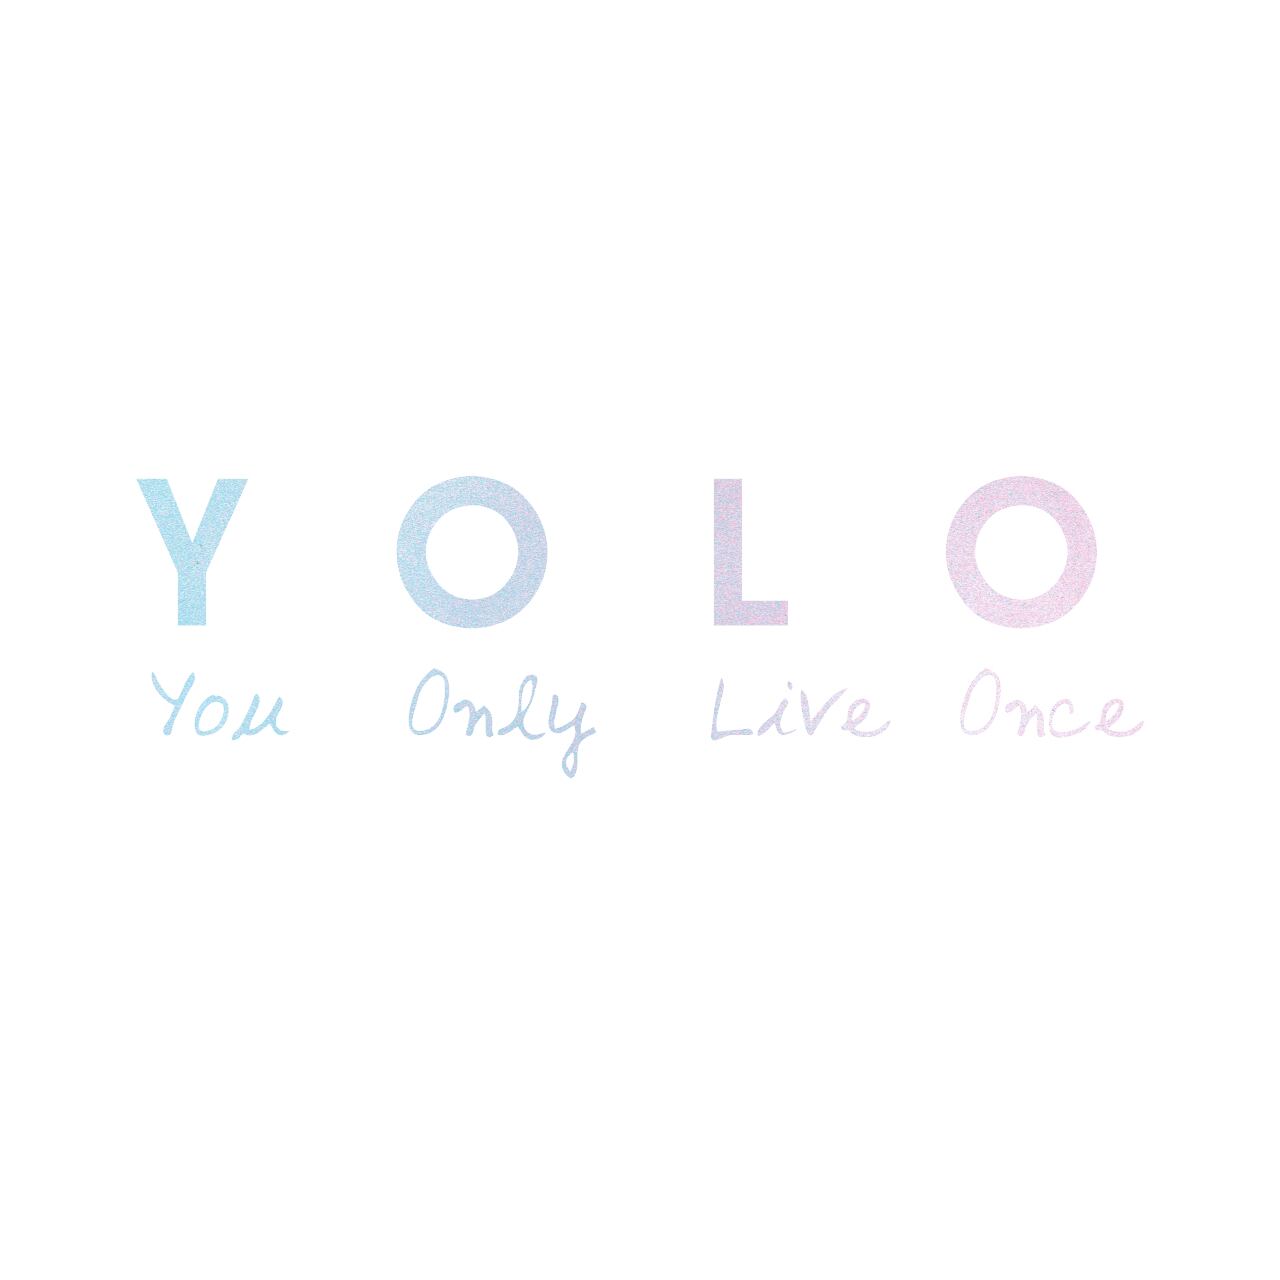 ウォールステッカー 名言 Yolo You Only Live Once 空ピンク 光沢 スプレーアート Iby アイバイ ウォールステッカー 通販